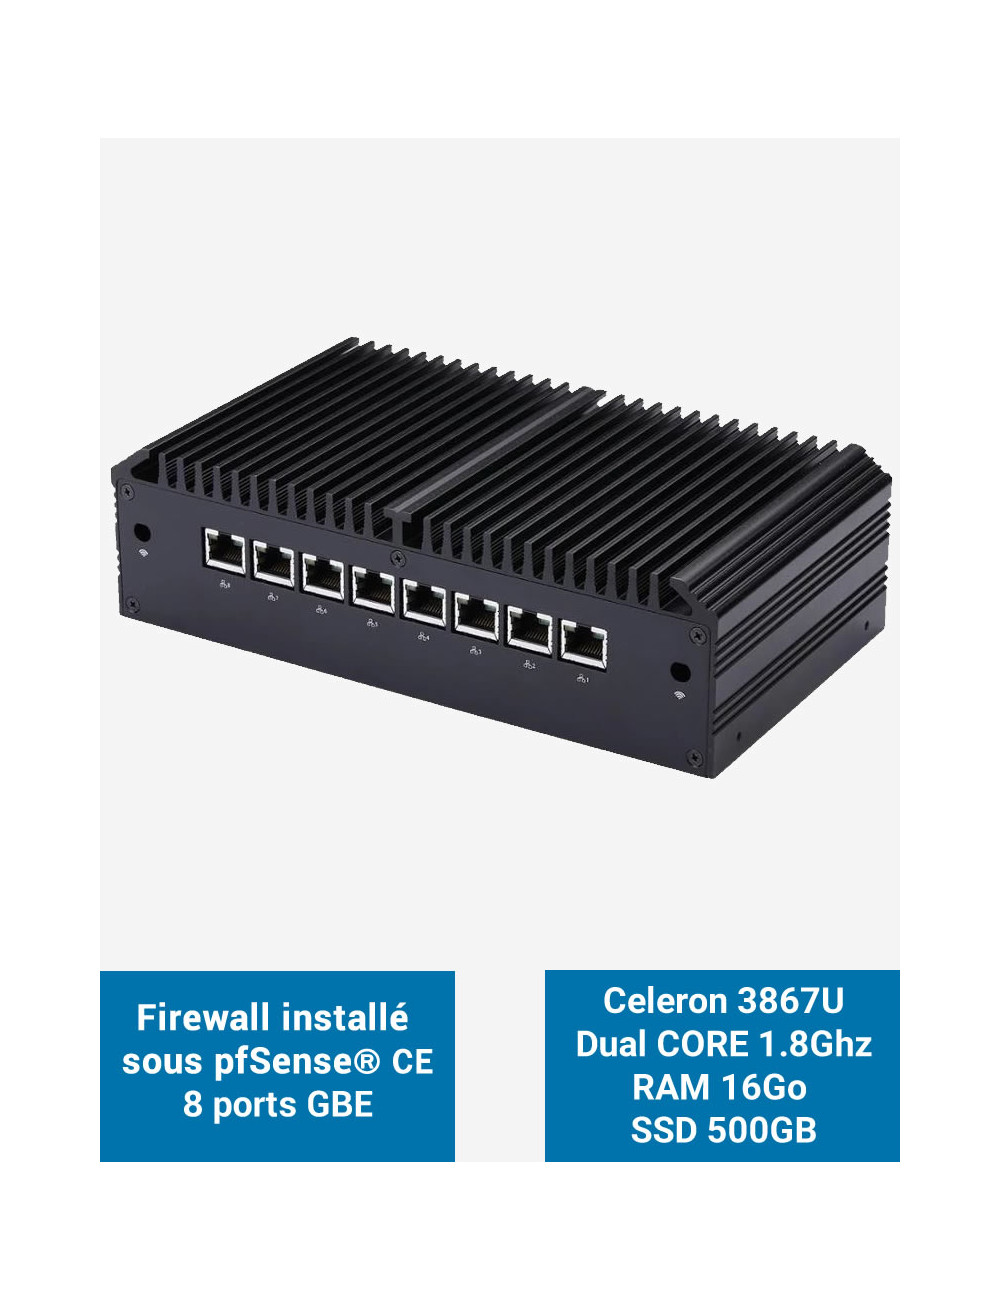 Firewall Q8x Celeron 3867U 8 ports GbE 16GB 500GB